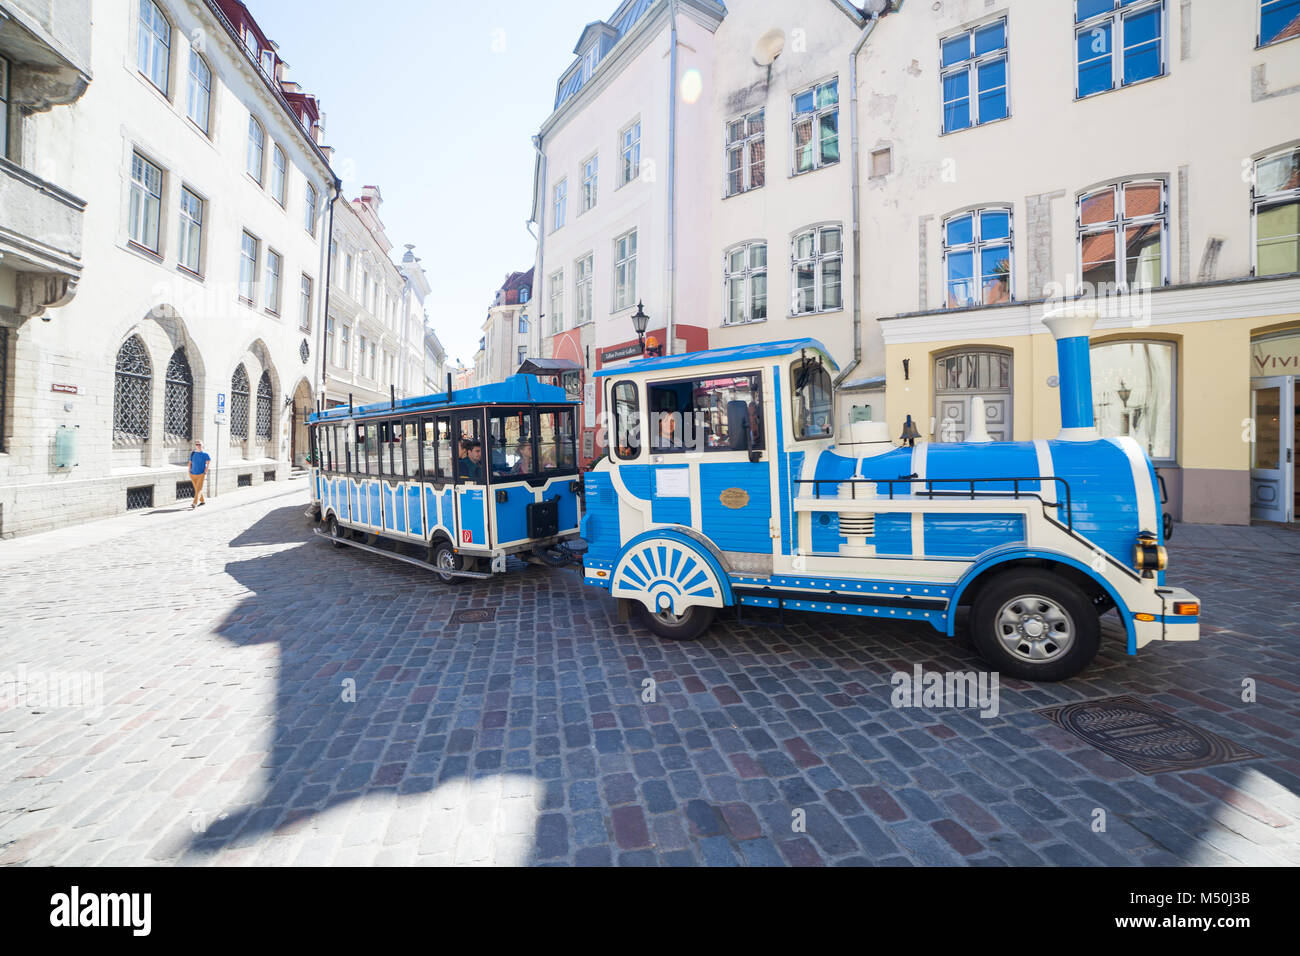 Tourist train car on the street of old Tallinn Stock Photo